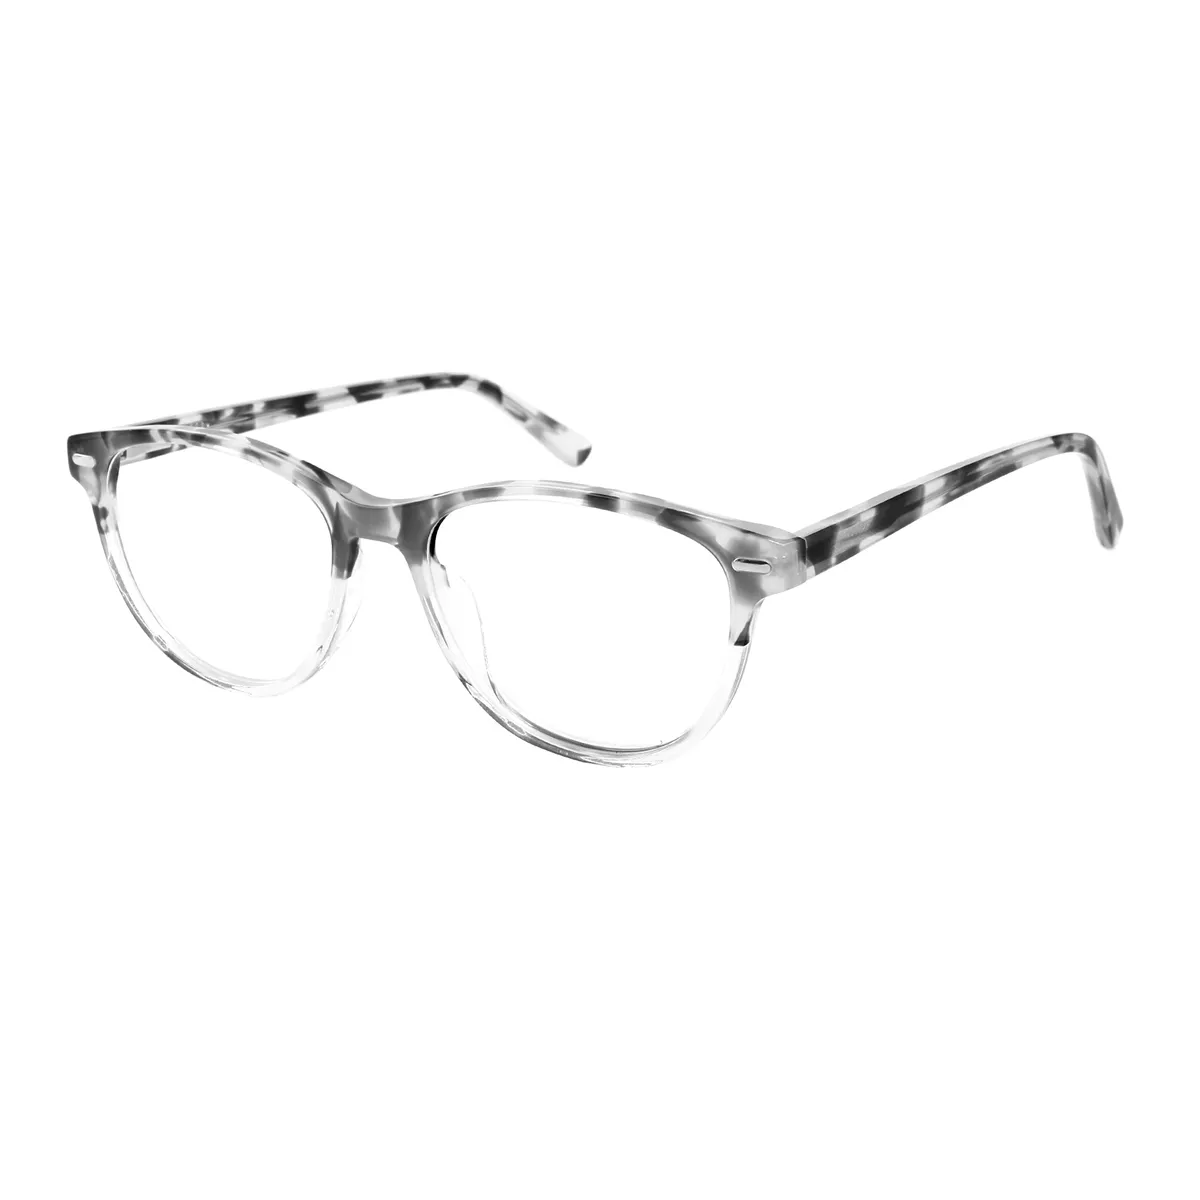 Agricola - Oval Gray-Tortoiseshell Glasses for Men & Women - EFE